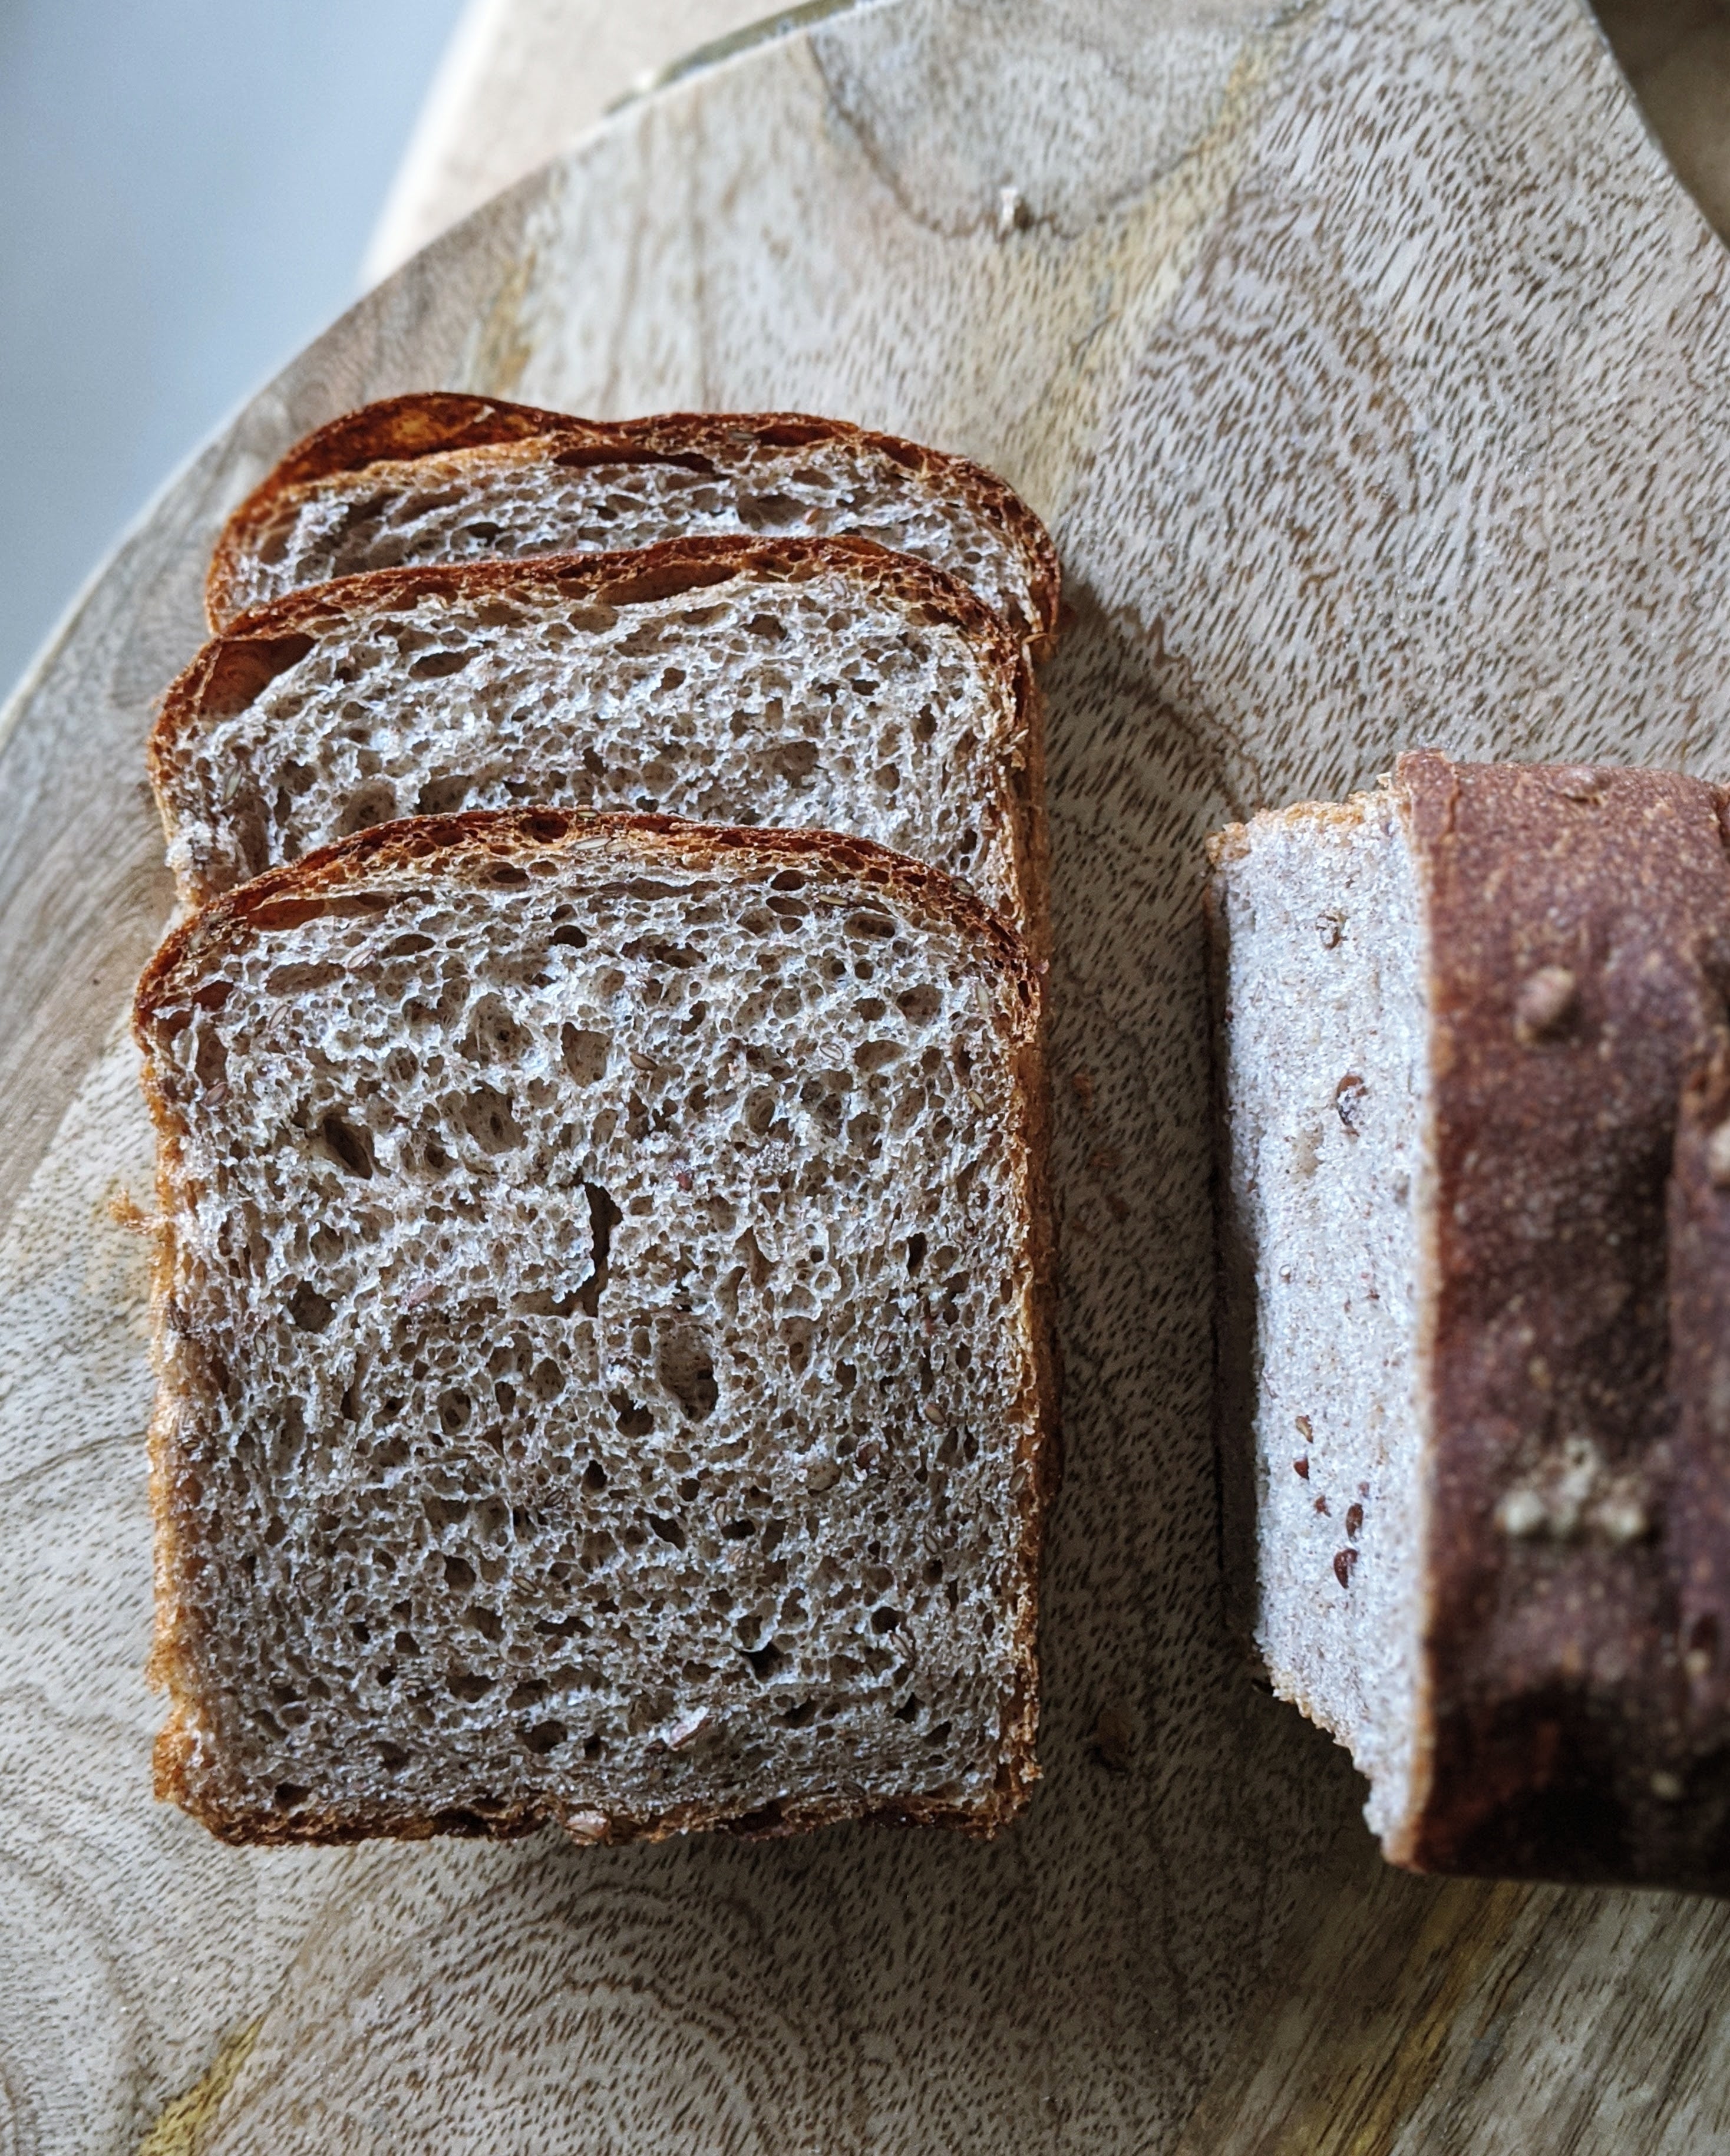 Multigrain Sandwich Loaf